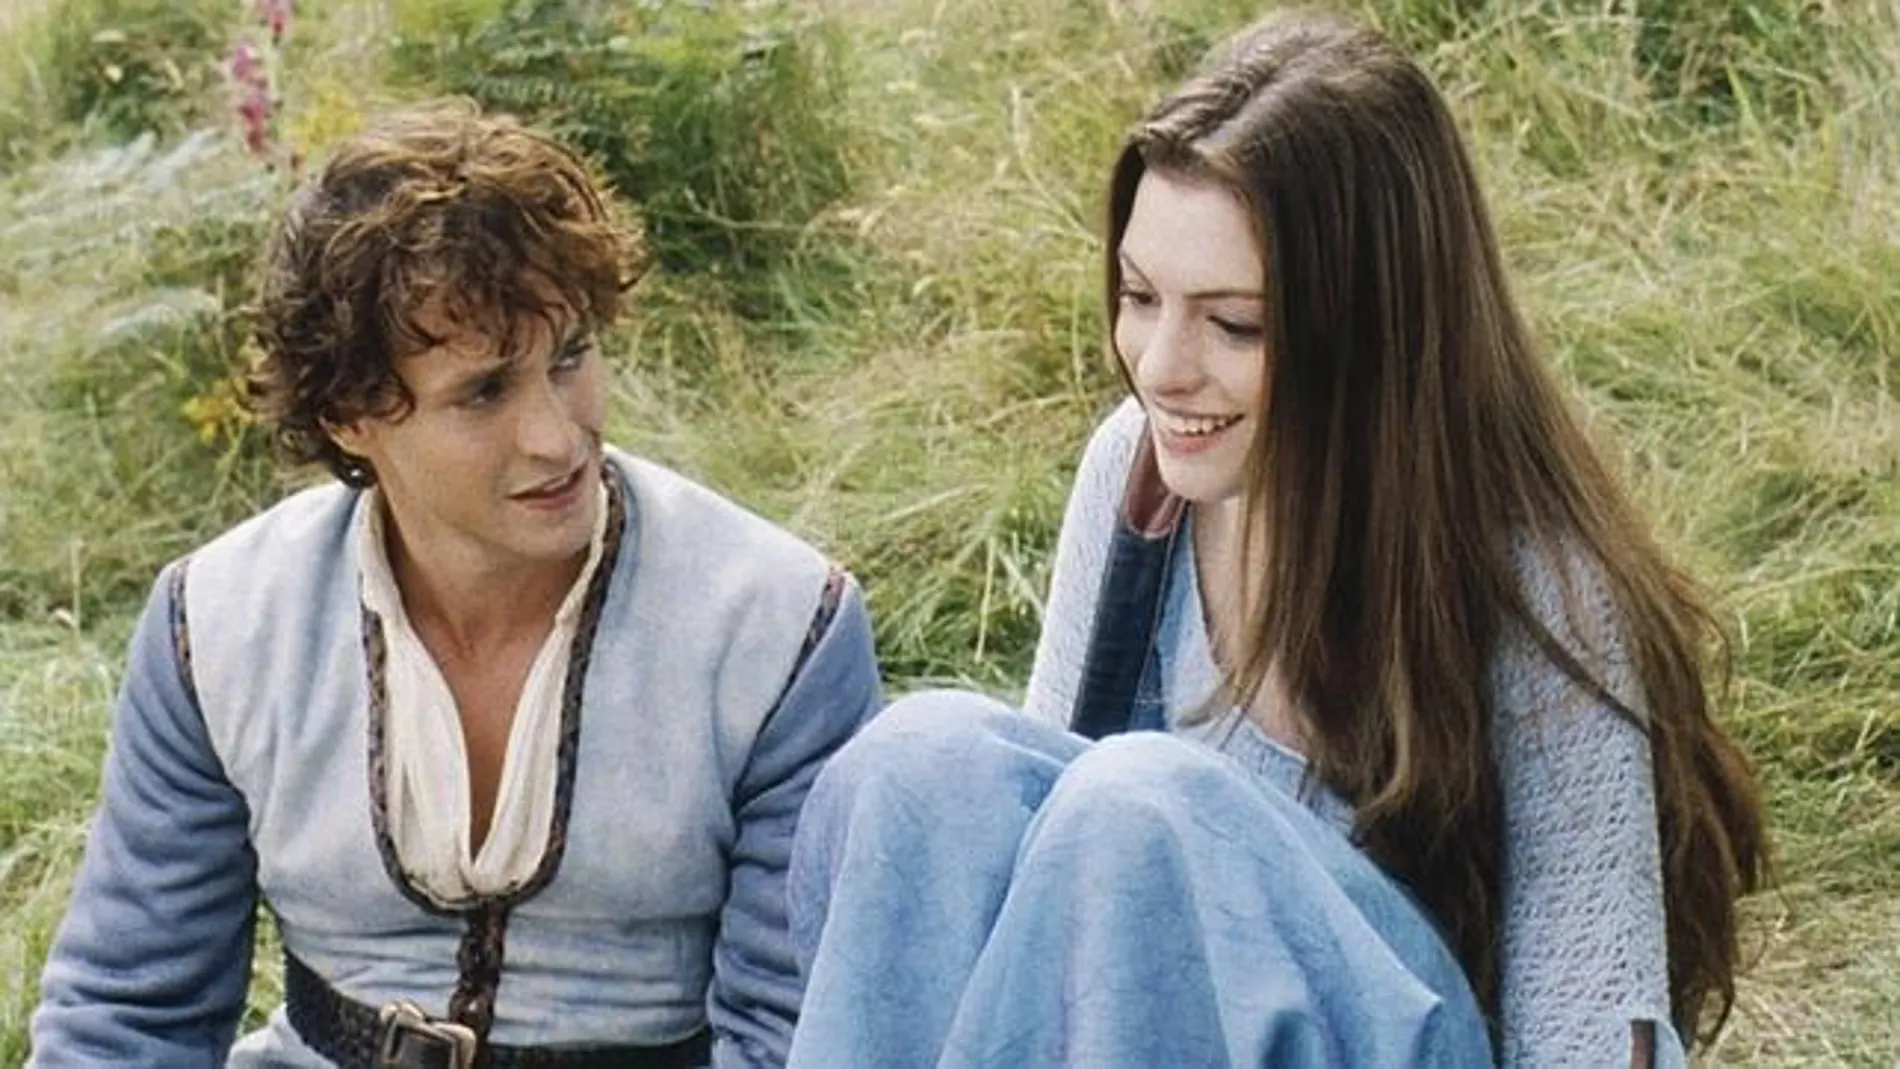 Dos personajes de una película sentados sobre la hierba, él viste camisa y chaleco, ella lleva un chal azul